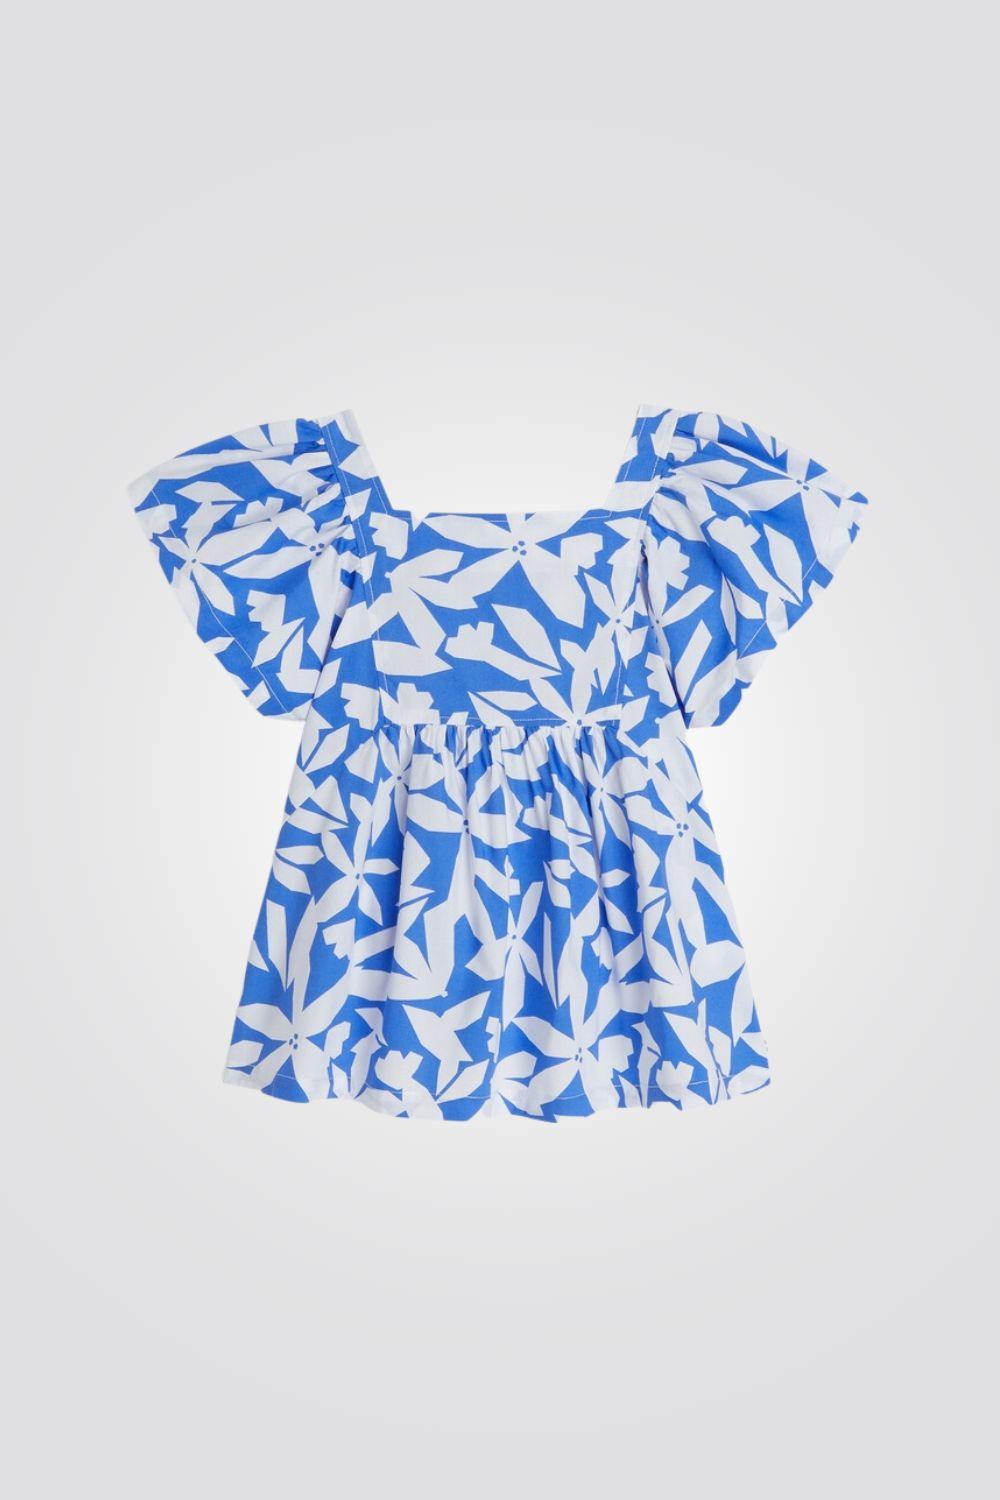 OKAIDI - חולצה פרחונית בצבע כחול לילדות - MASHBIR//365